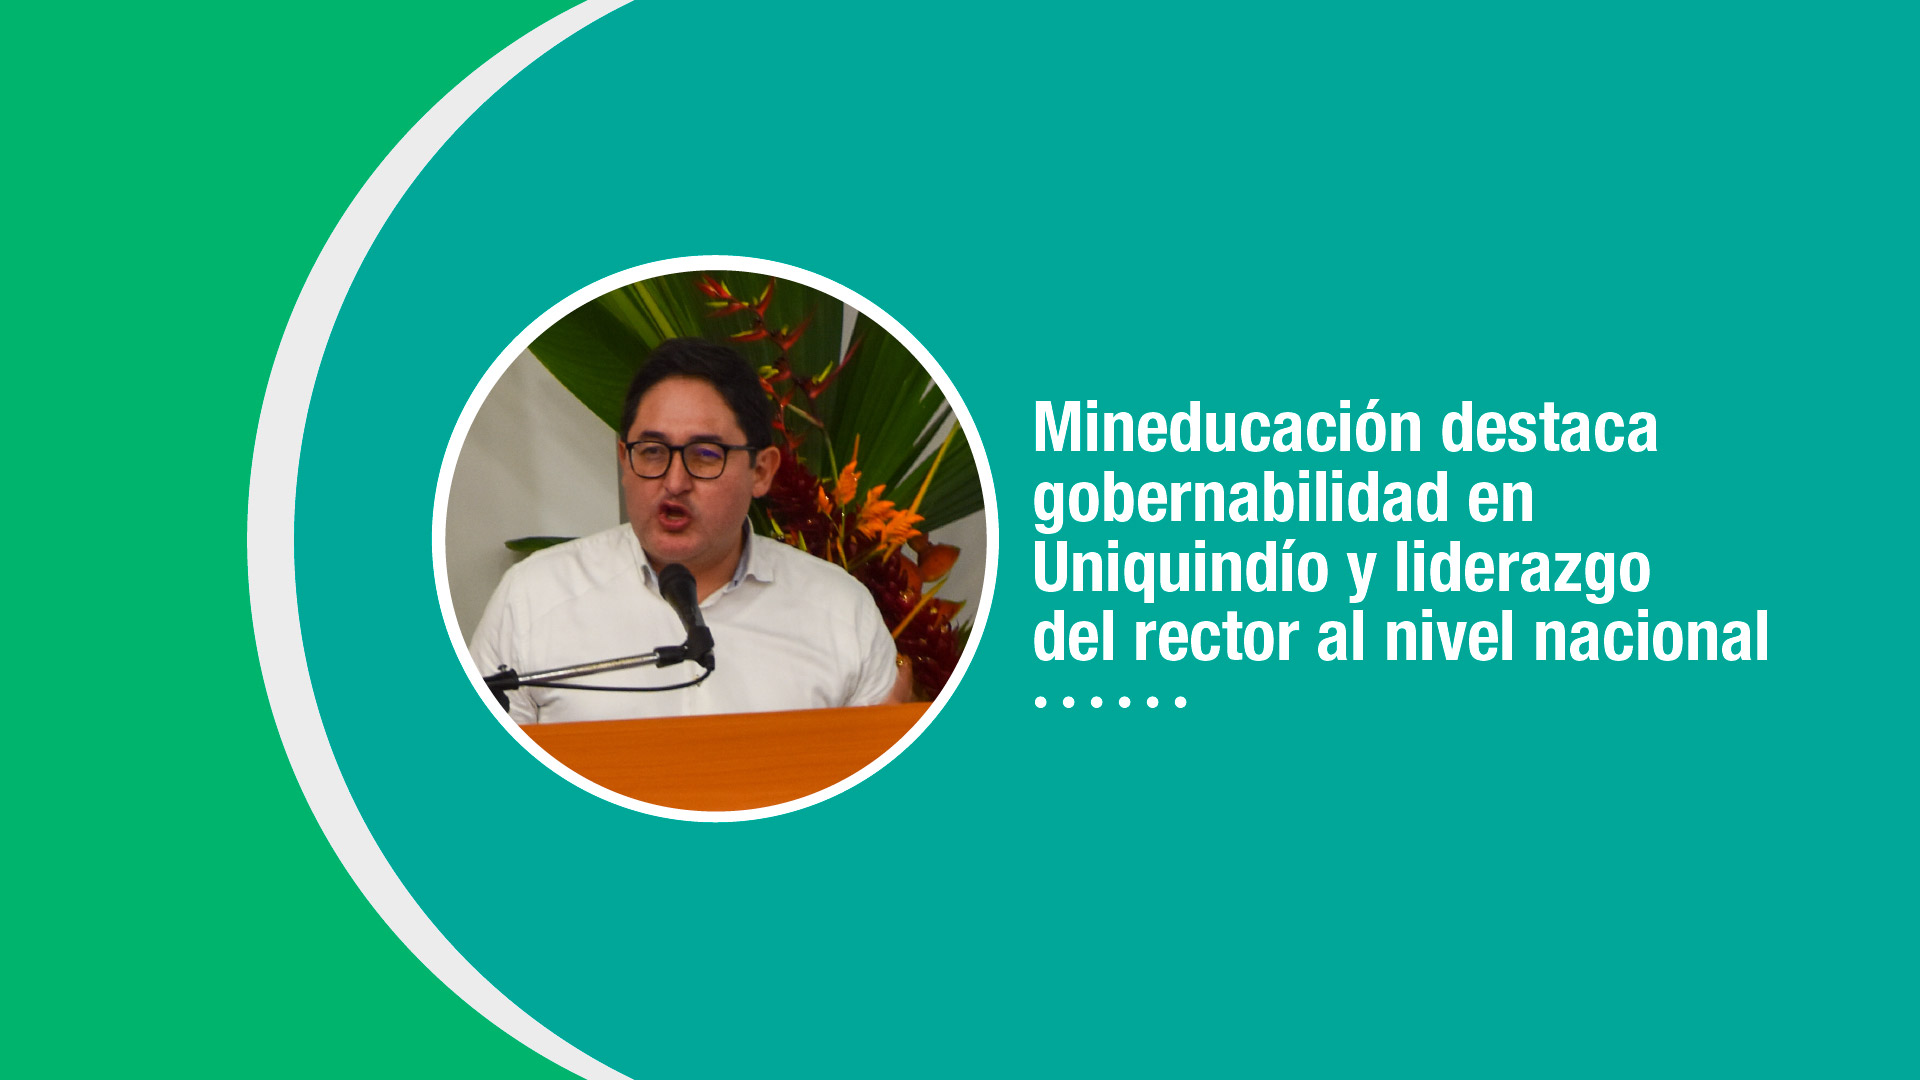 Mineducación destaca gobernabilidad en Uniquindío y liderazgo del rector al nivel nacional